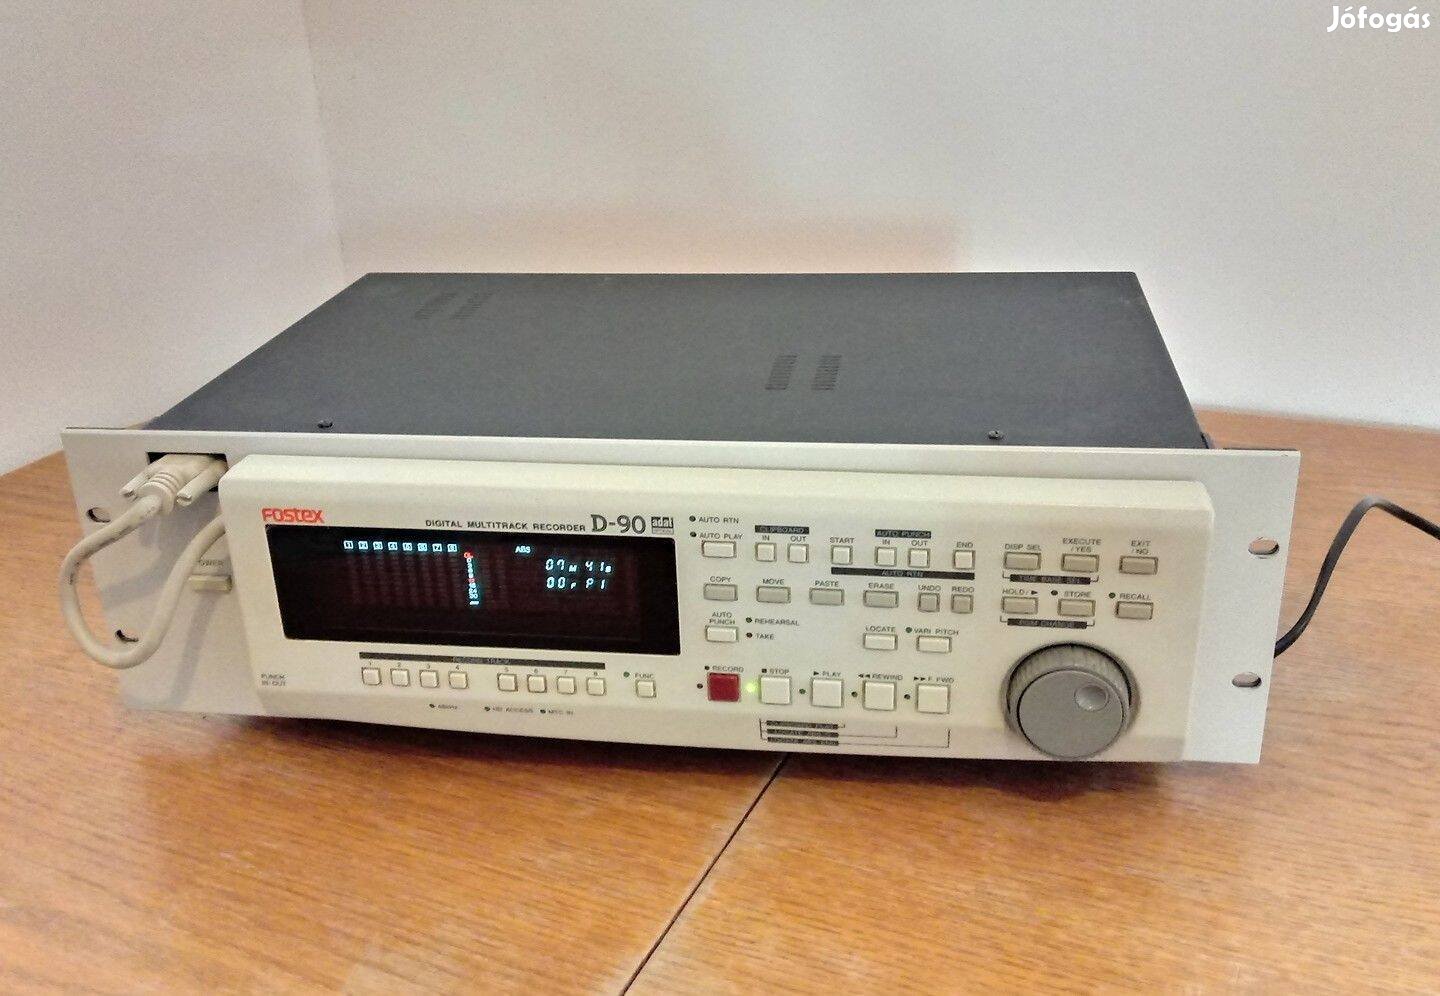 Fostex D-90 Digital Multitrack Recorder